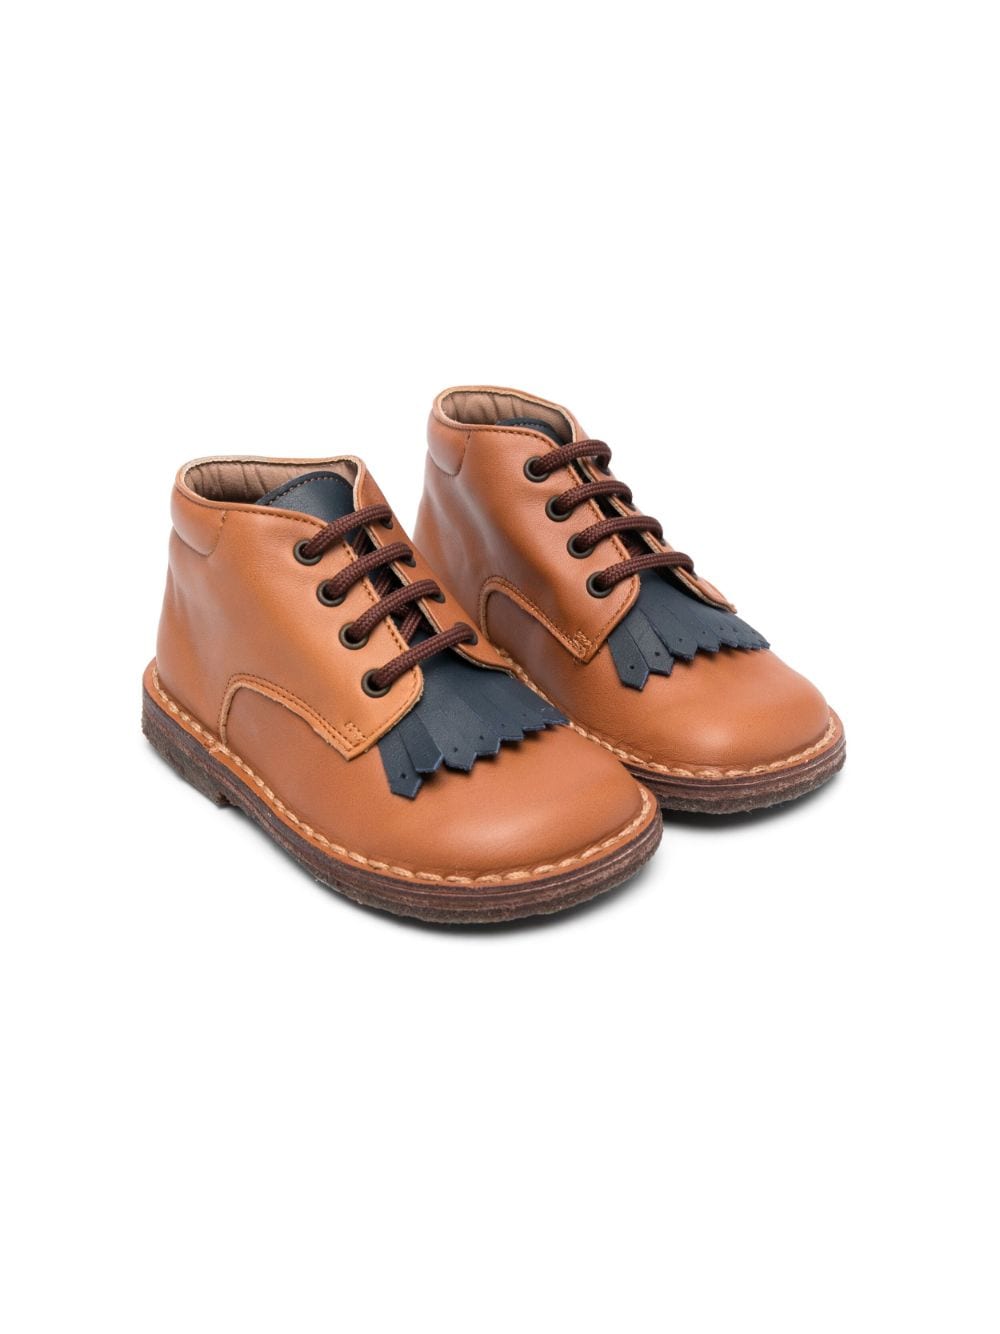 Pèpè lace-up leather boots - Brown von Pèpè